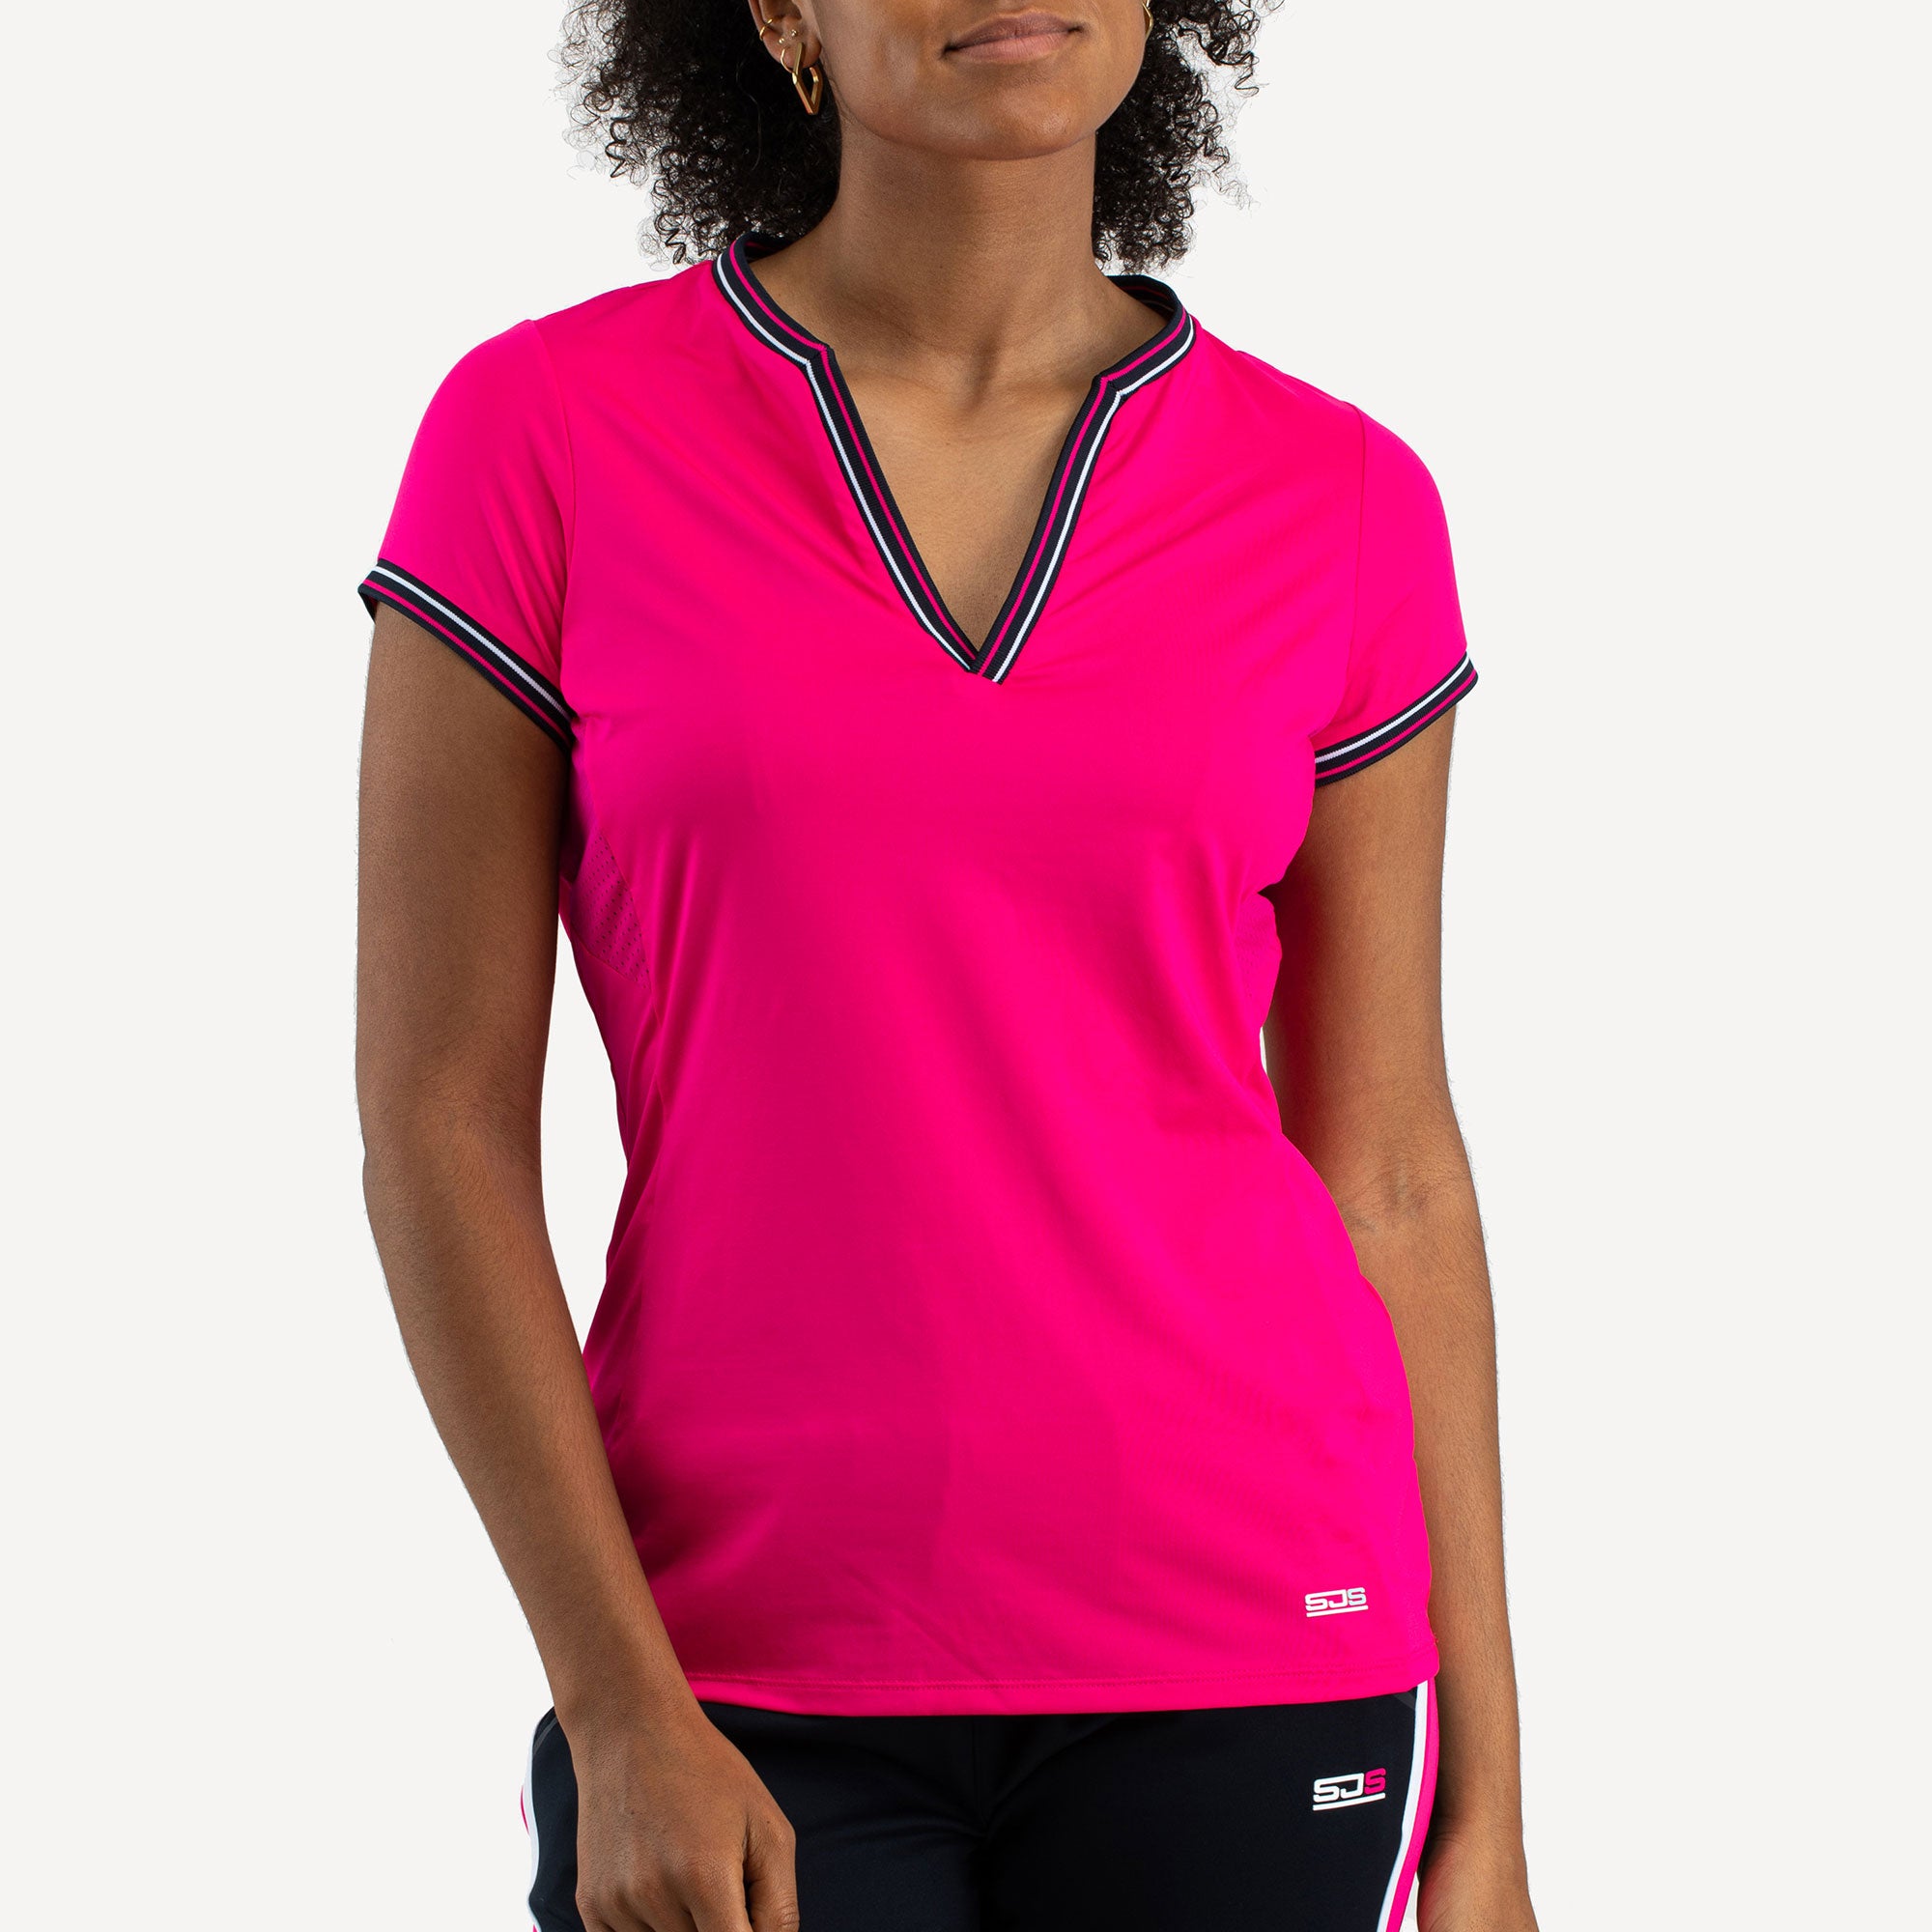 Sjeng Sports Diva Women's Tennis Shirt Pink (1)